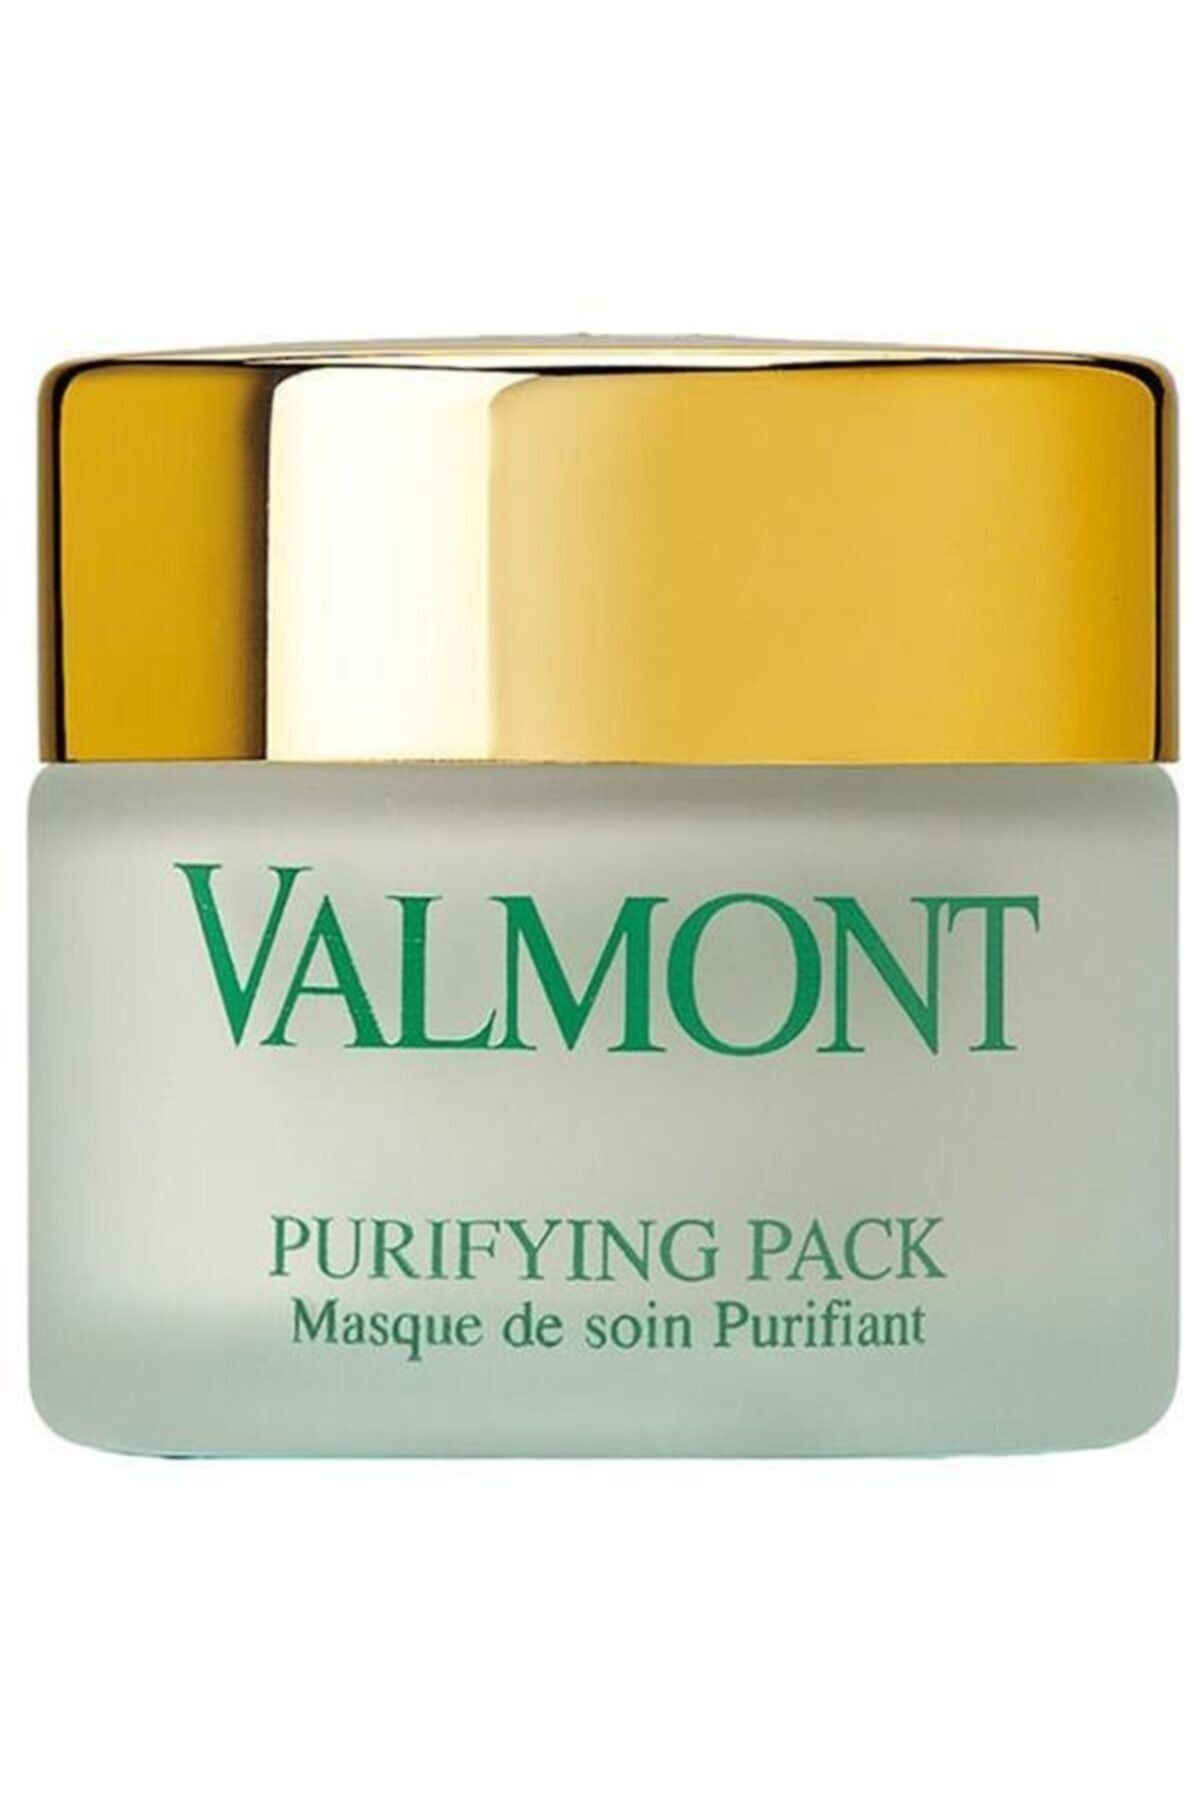 Valmont маска золушки. Маски Valmont Pack. Valmont маска для лица. Valmont Purifying Pack. Valmont для волос.